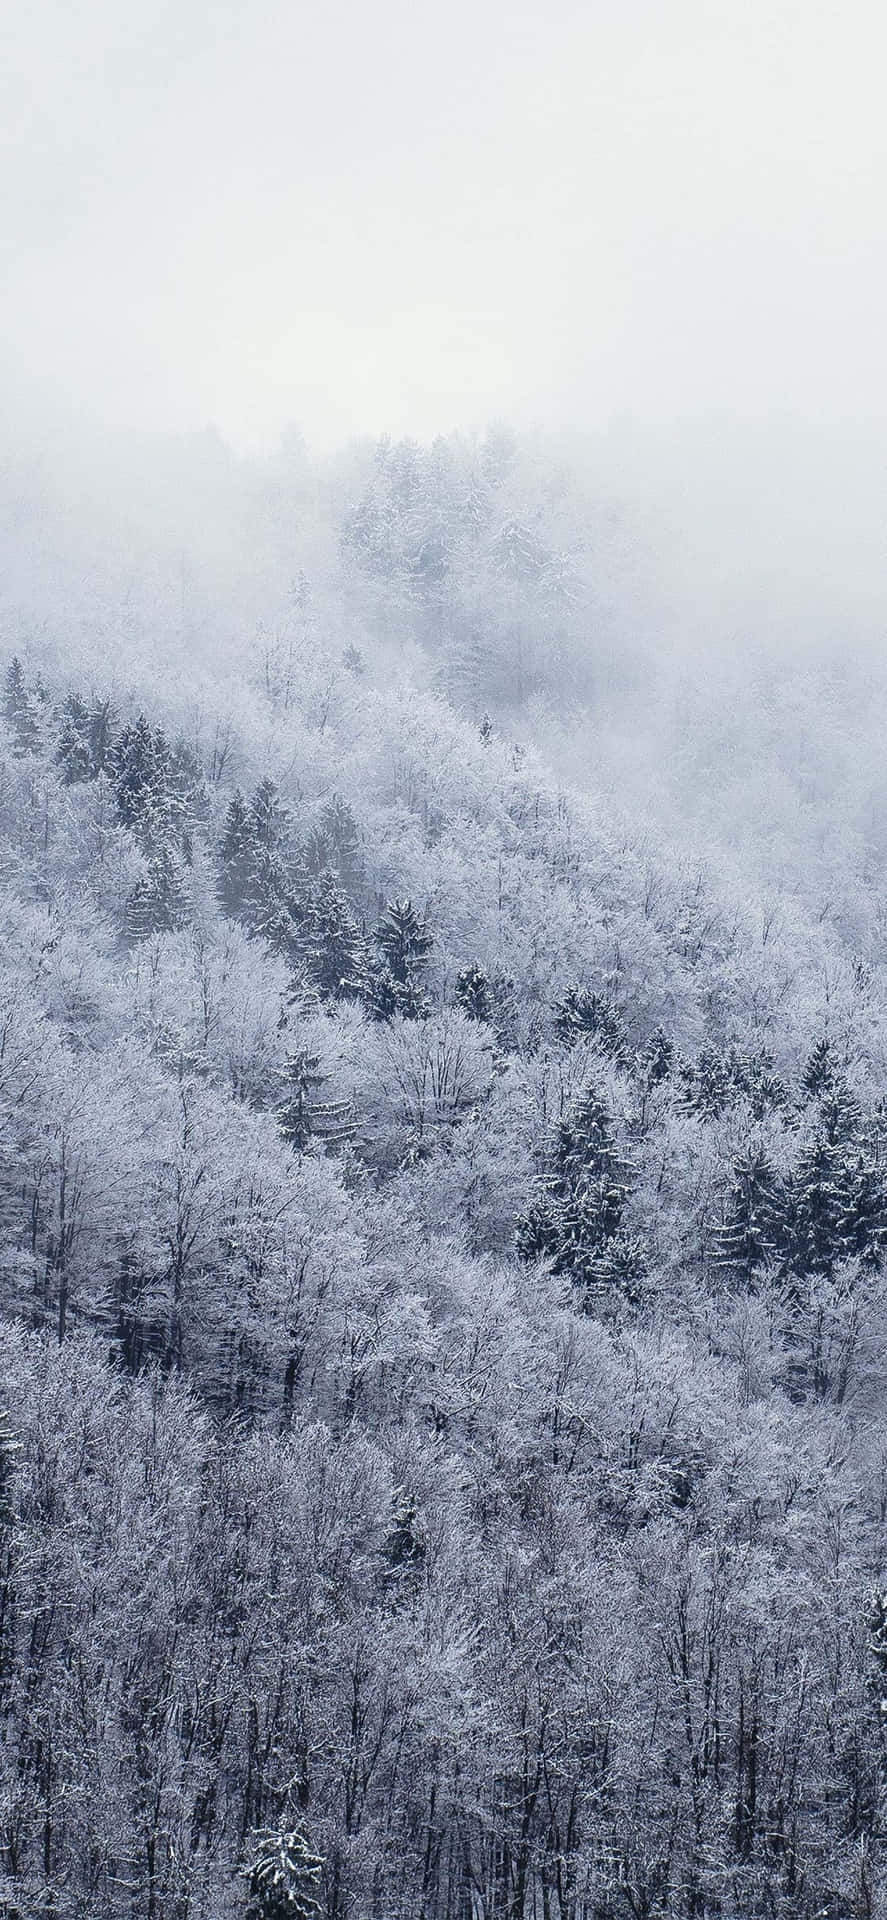 Explorael Maravilloso Invierno Blanco Con El Fondo De Pantalla De Nieve Para Iphone. Fondo de pantalla